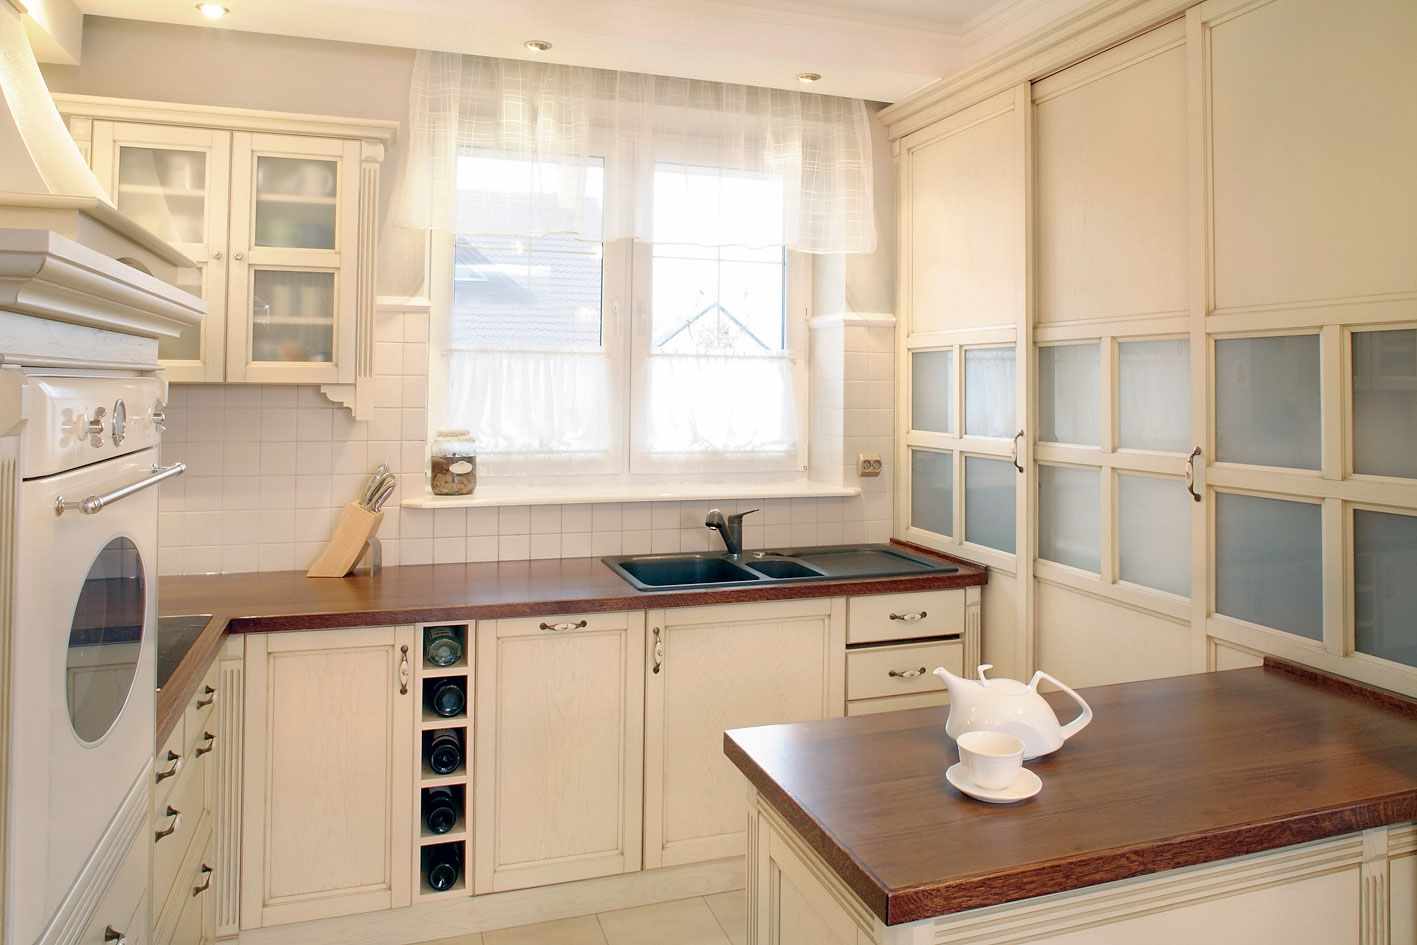 l'idea di una bella finestra in stile in cucina